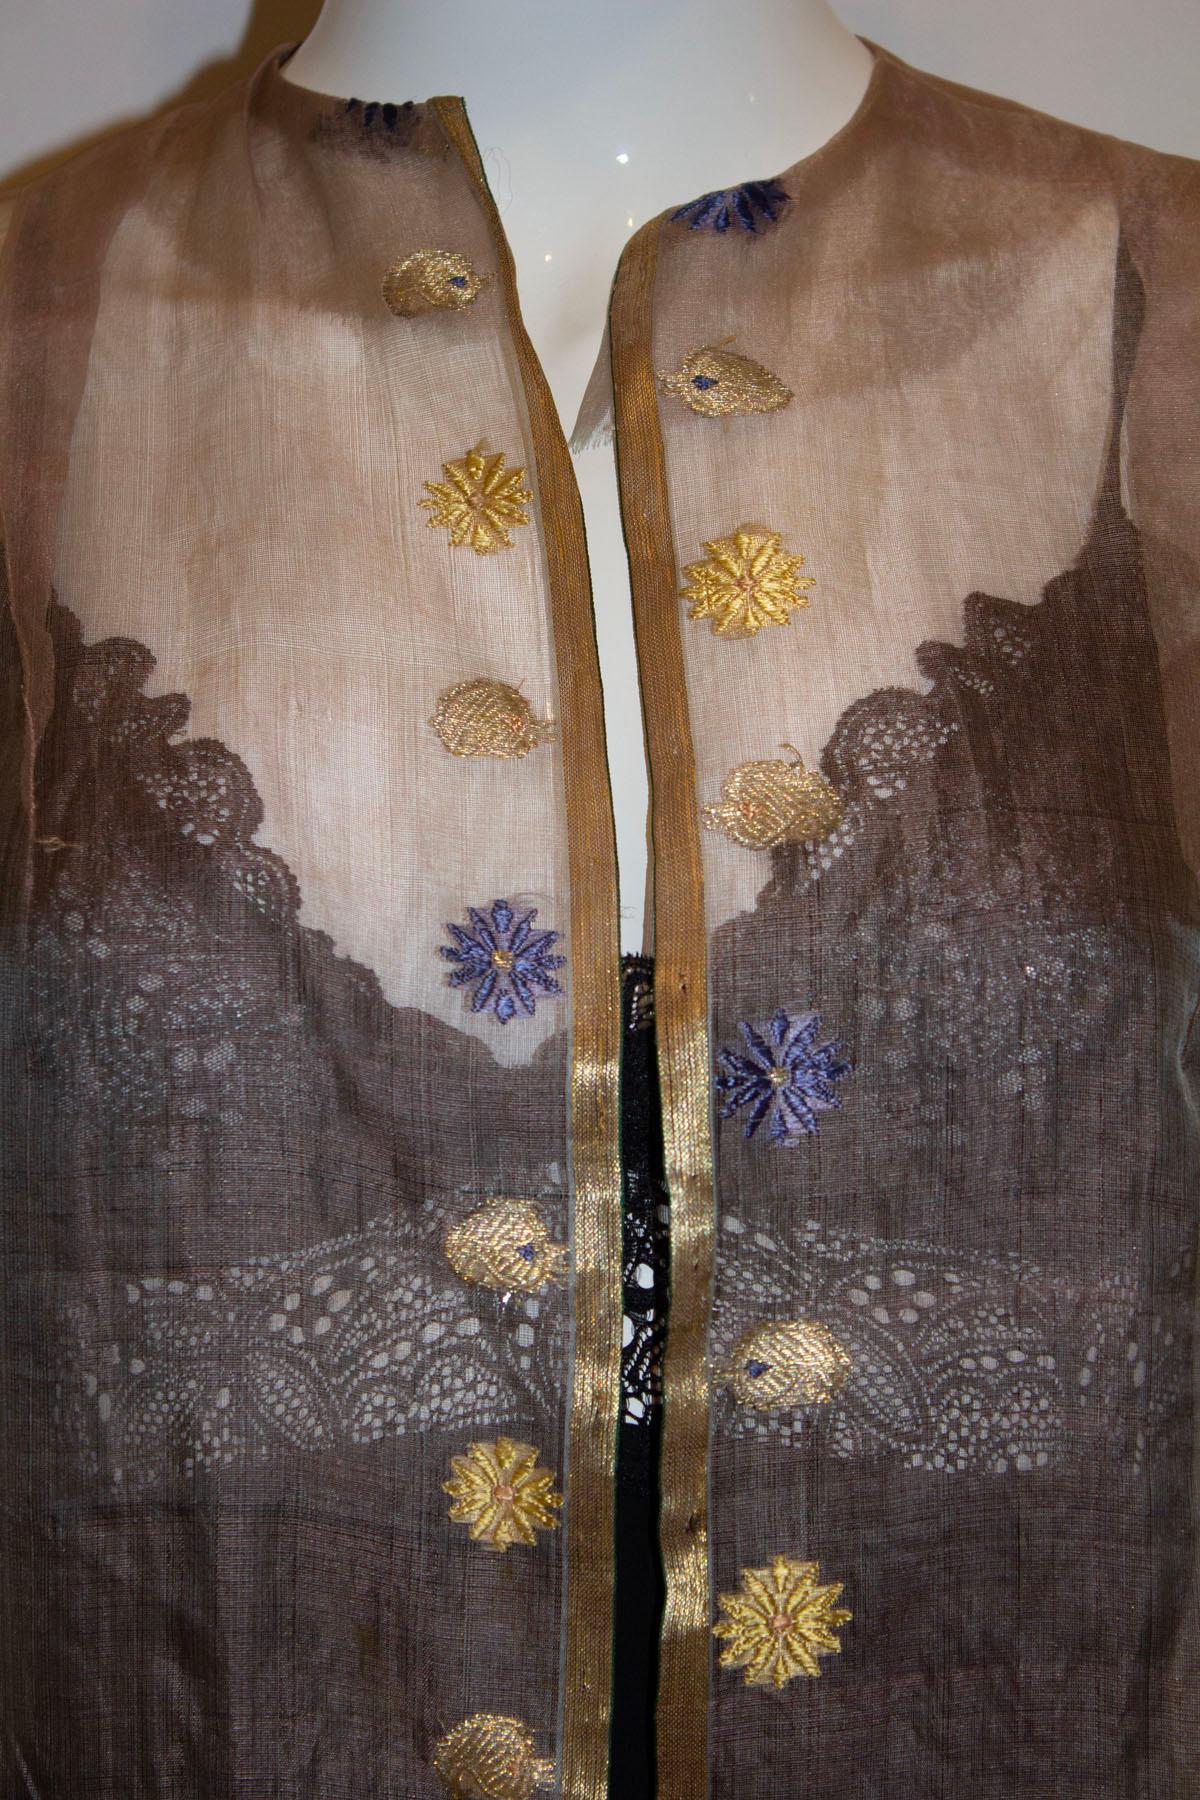 Ein furchtbar hübscher Vintage-Seiden-Organza-Staubmantel. Der Mantel ist in einem hübschen blassrosa Farbton gehalten, mit Goldfaden-Details und Stickereien. Es ist kragenlos, hat ellenbogenlange Ärmel und ist ungefüttert.
Maße: Oberweite bis zu